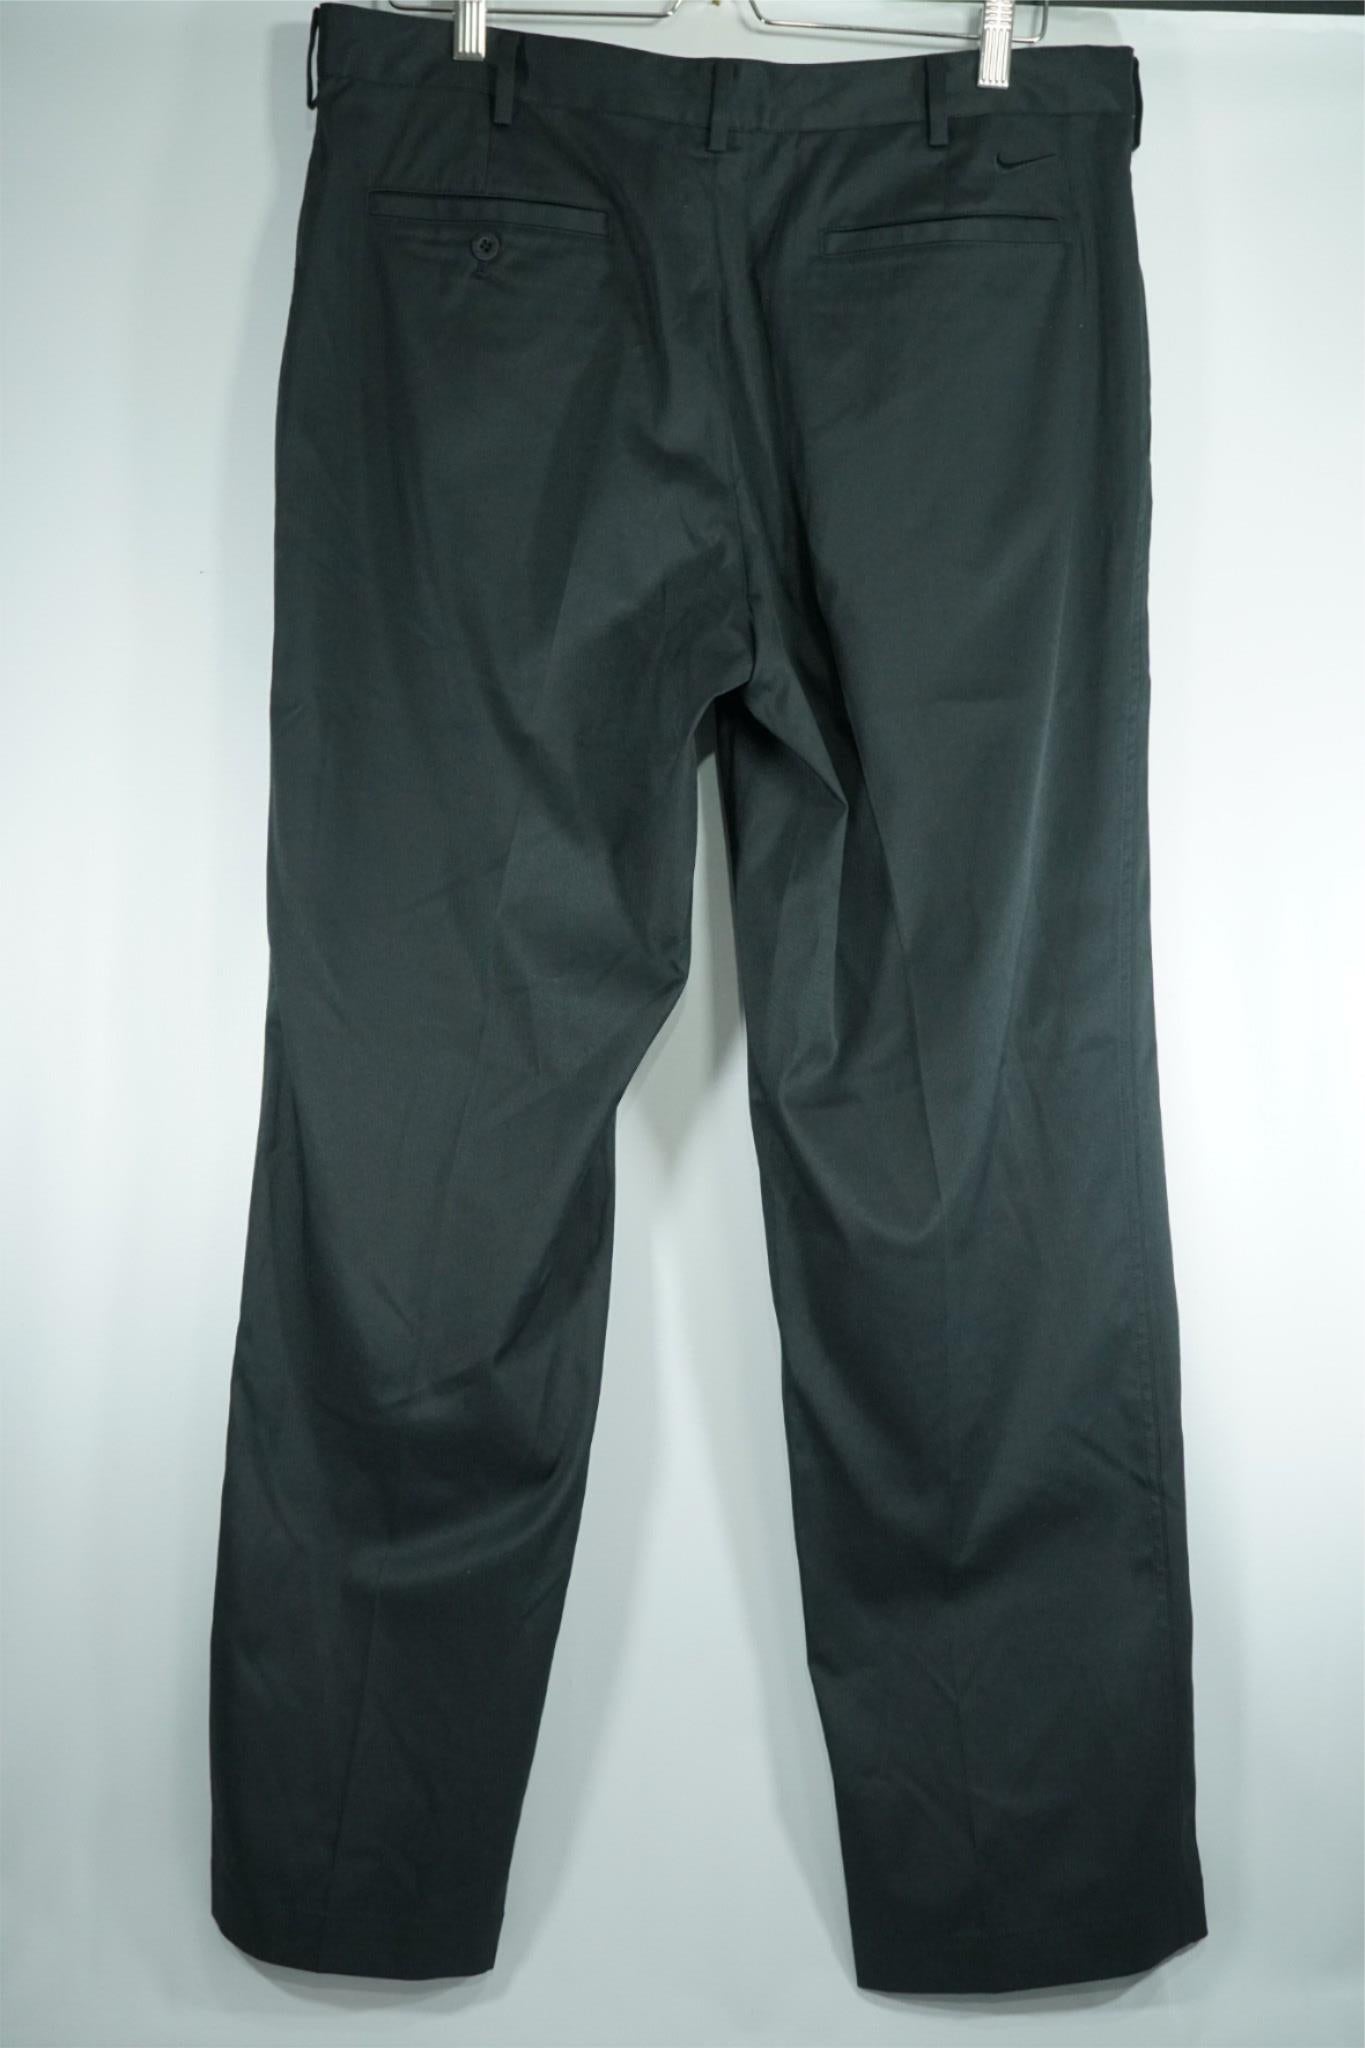 Nike Dri Fit Golf Trousers / 34x32 / Black